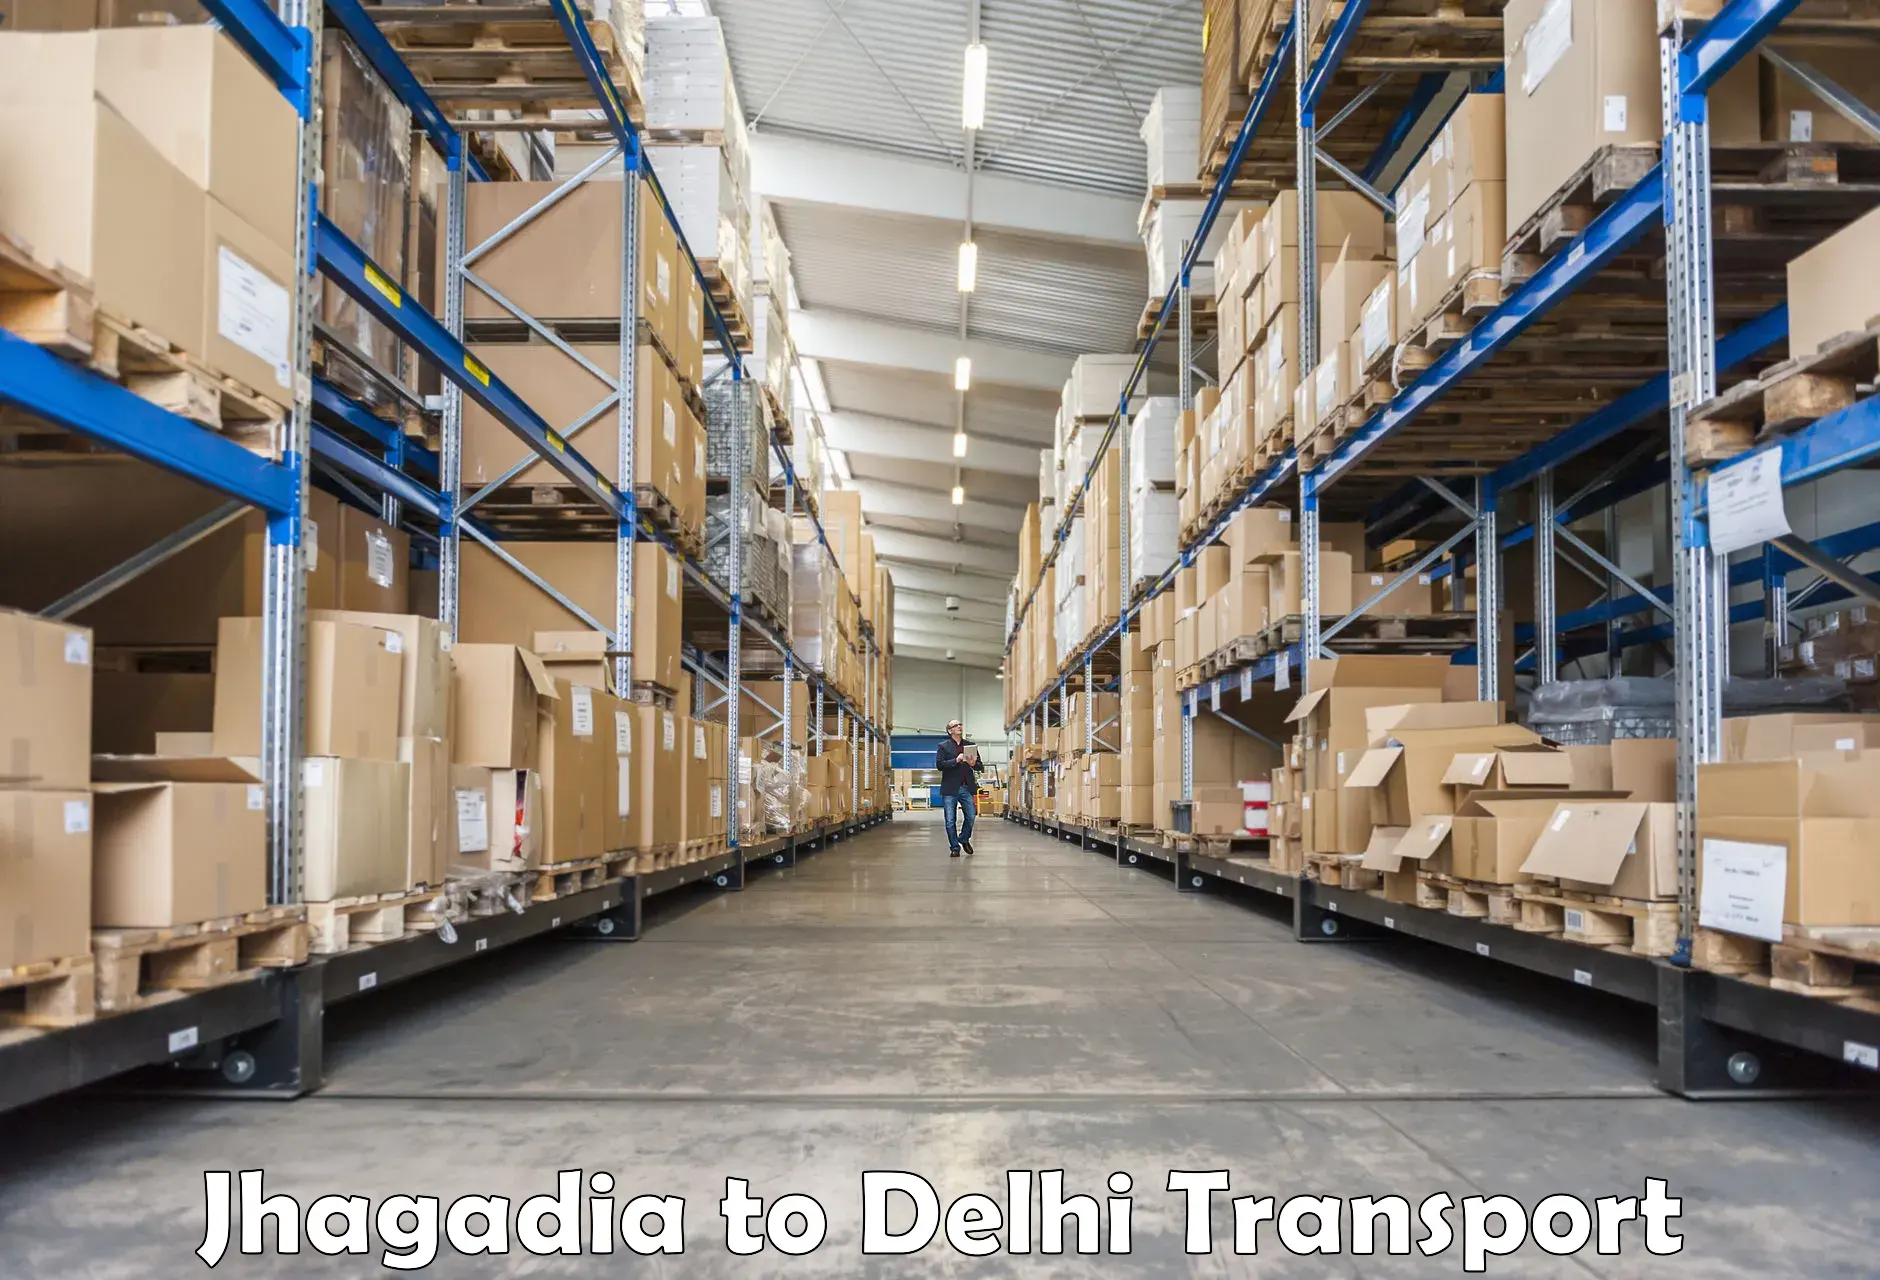 Online transport booking Jhagadia to Delhi